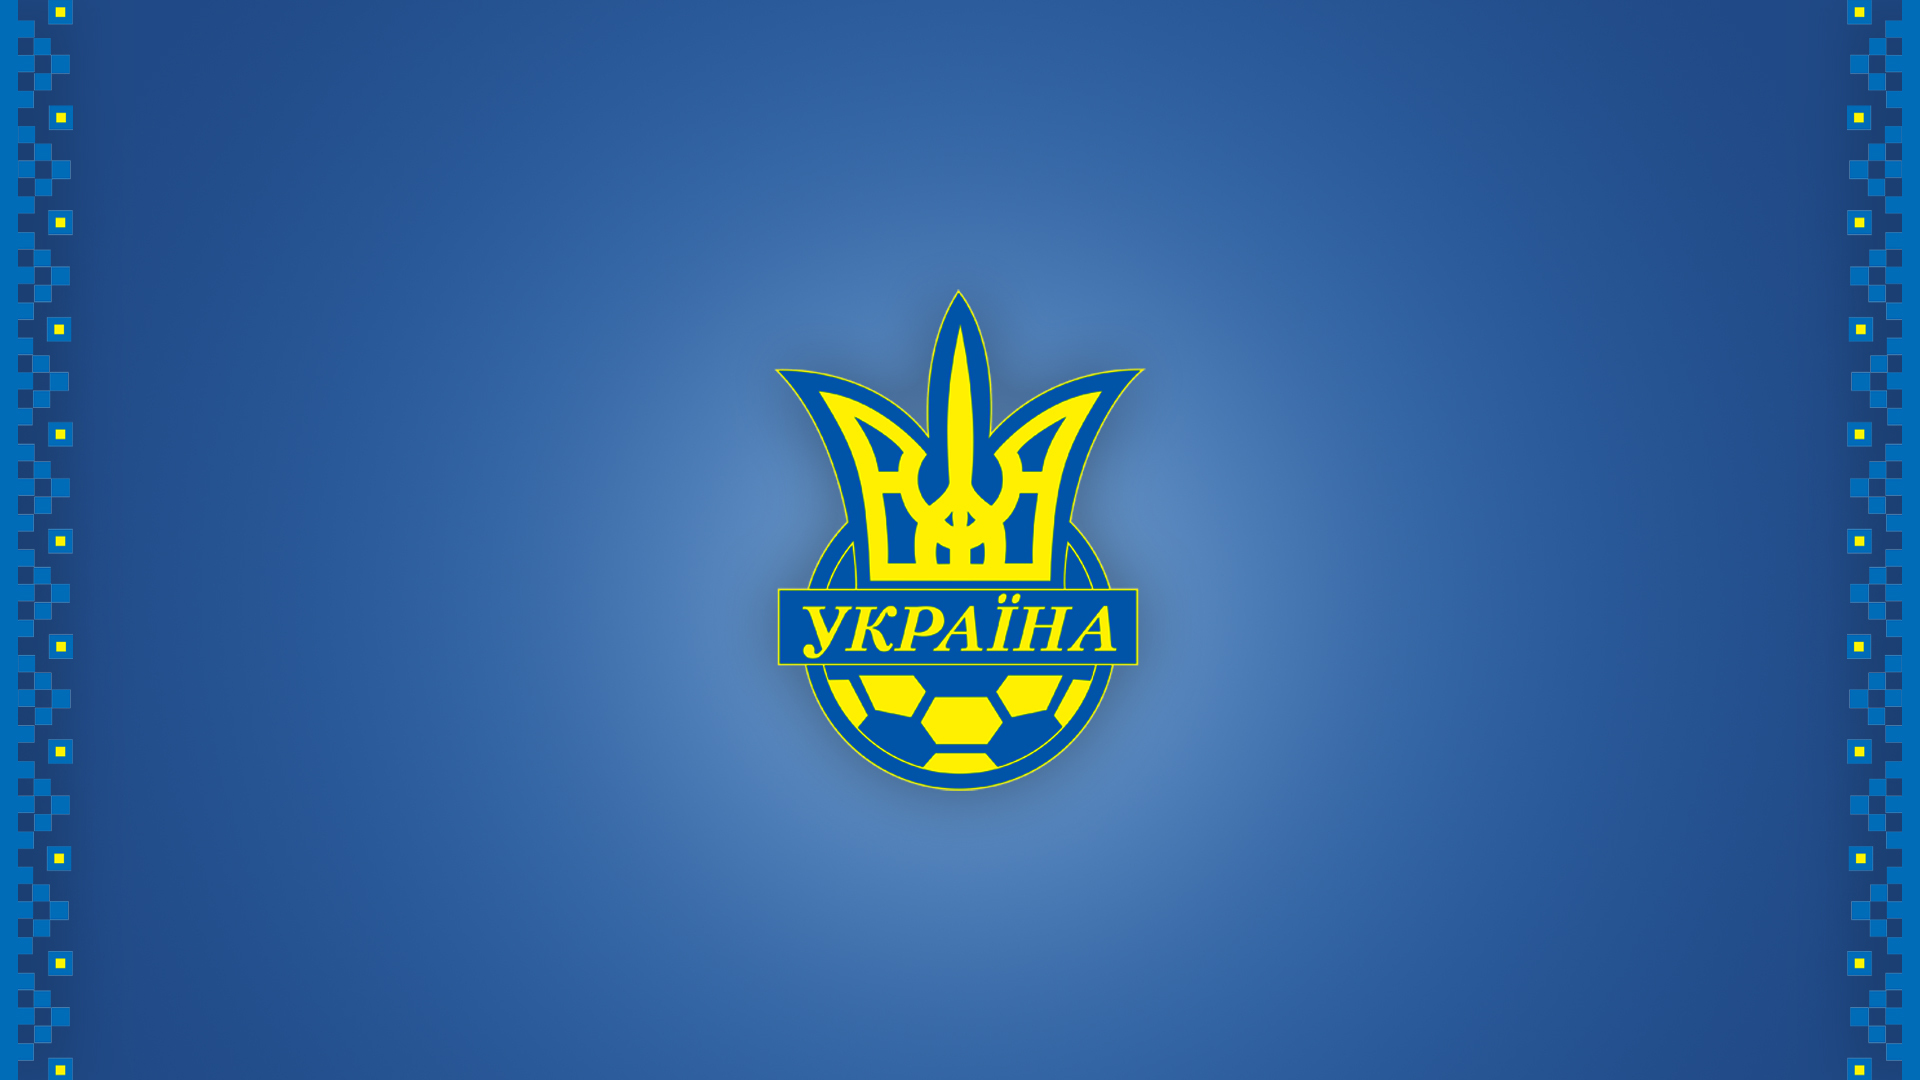 Сборная Украины лого